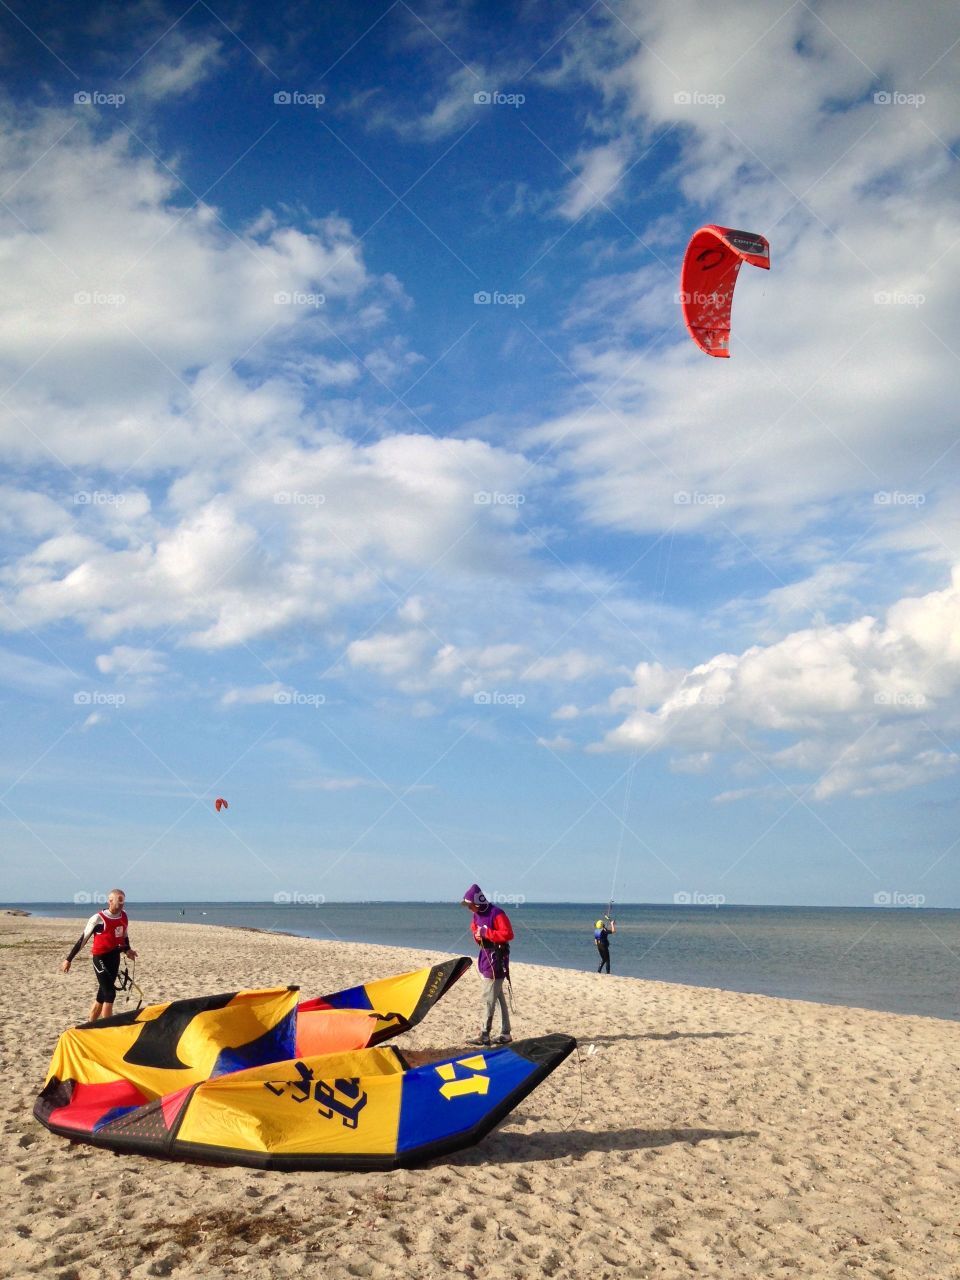 Kiting on Rewa beach Poland 